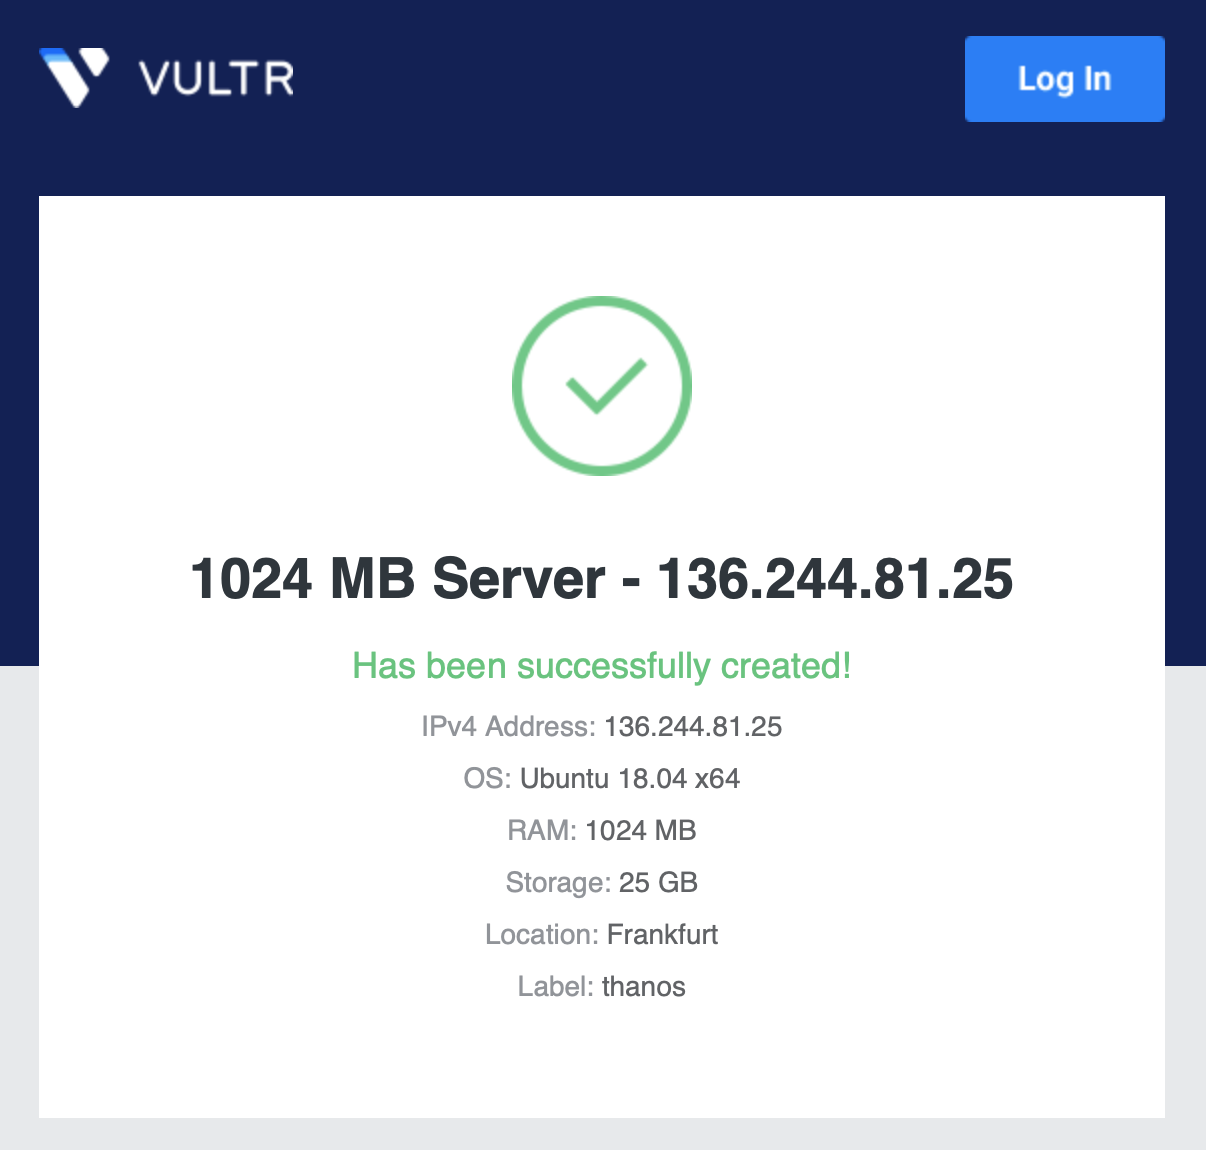 Vultr success deployment email screenshot